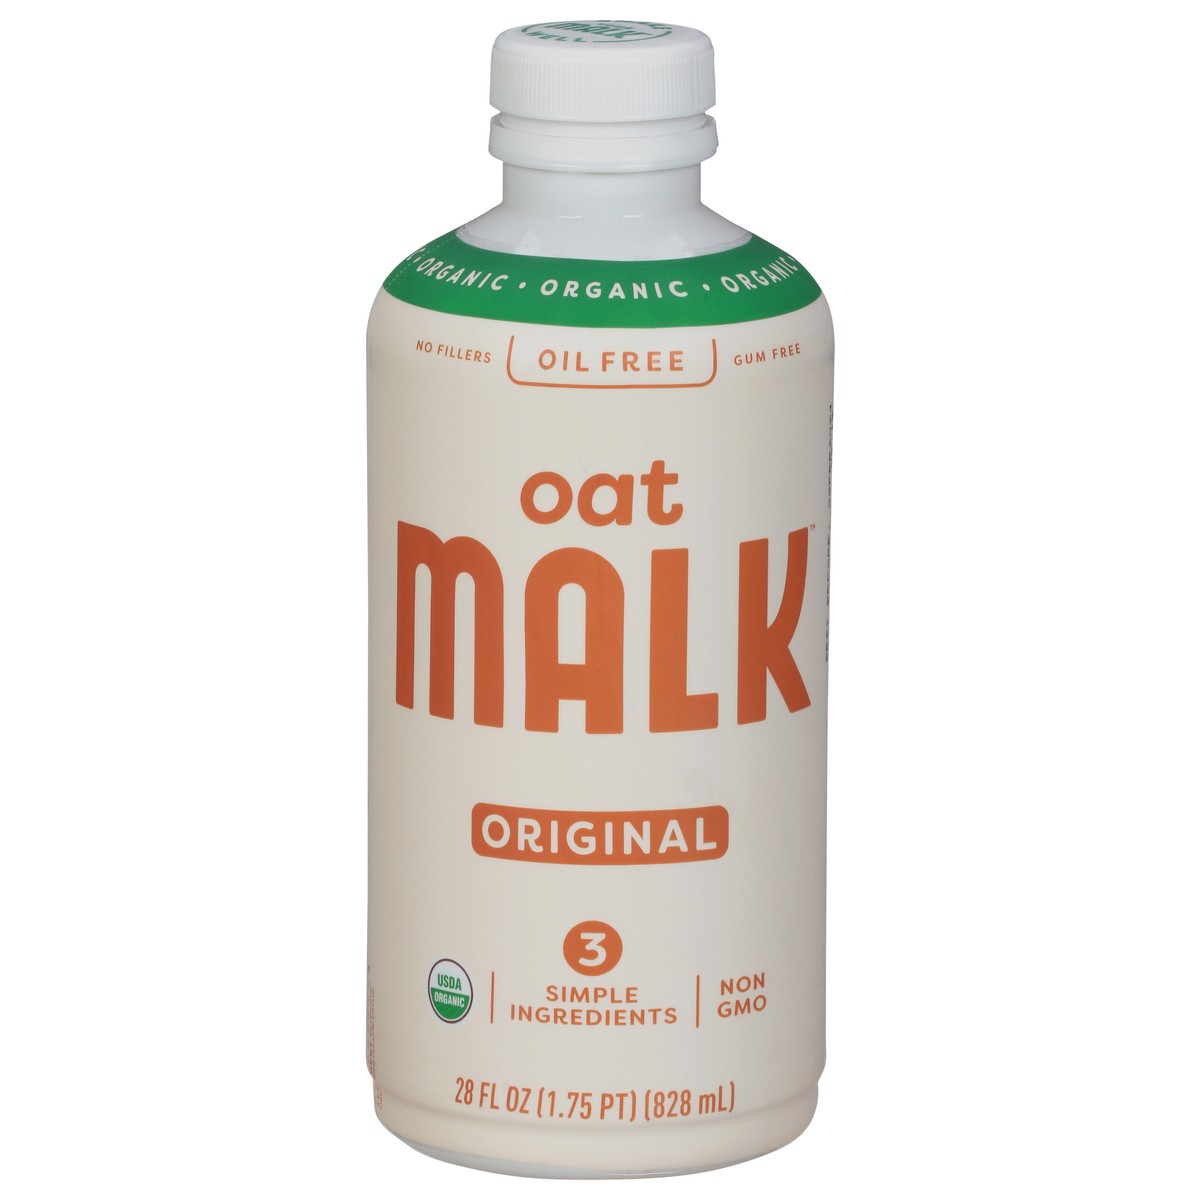 slide 1 of 11, Malk Organic Oil Free Original Oat Milk 28 fl oz, 28 fl oz